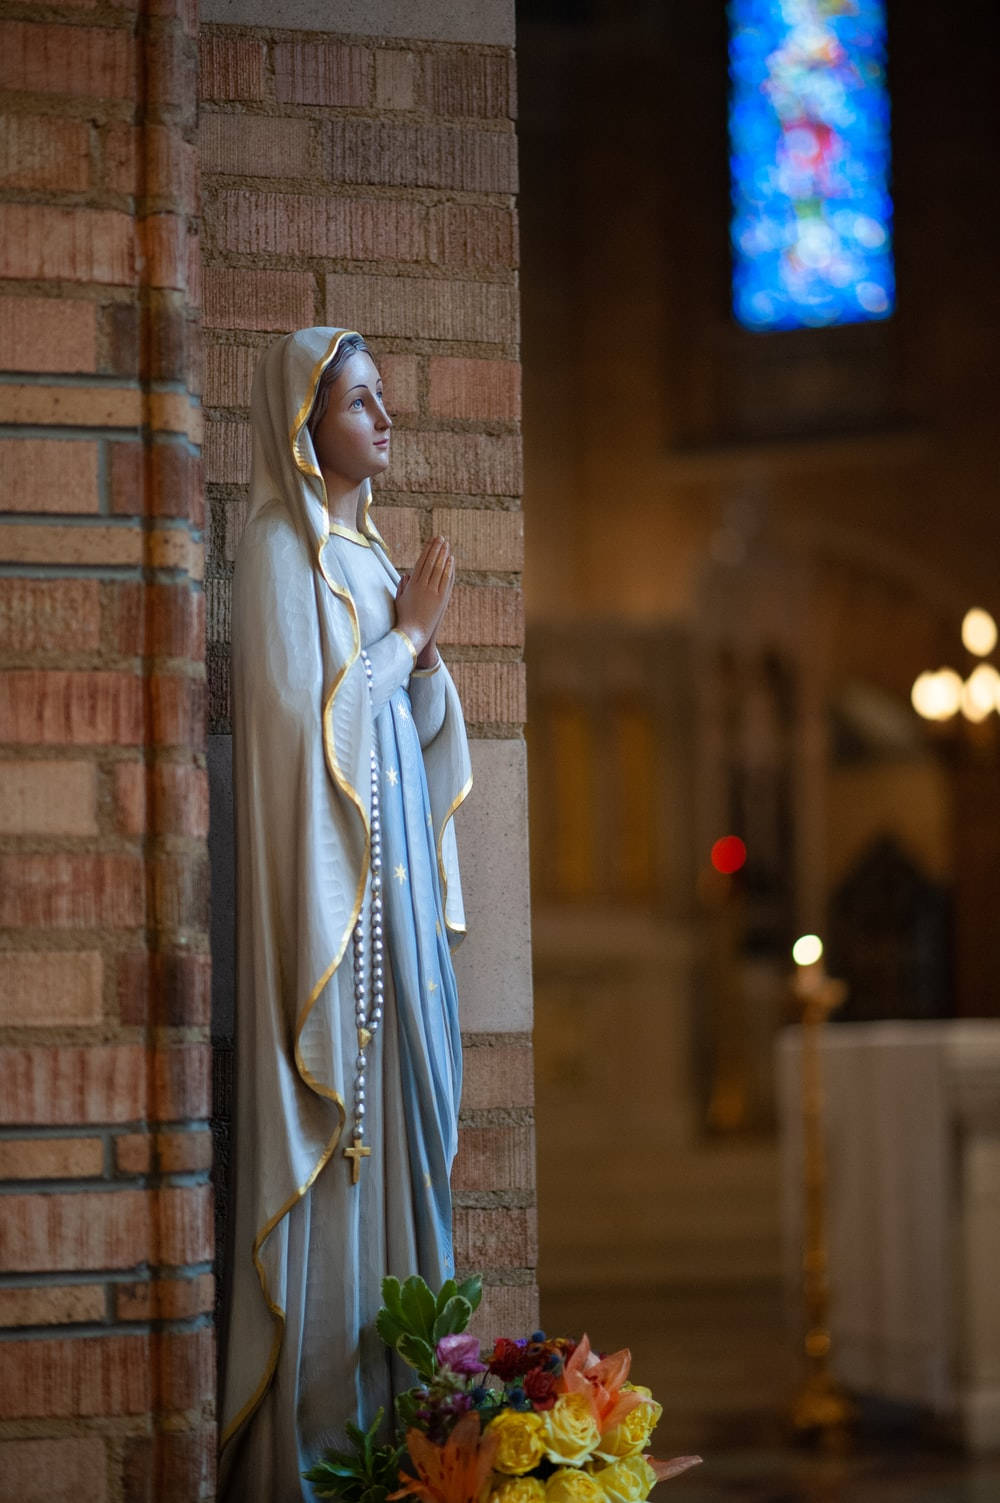 Aigreja Da Virgem Maria. Papel de Parede